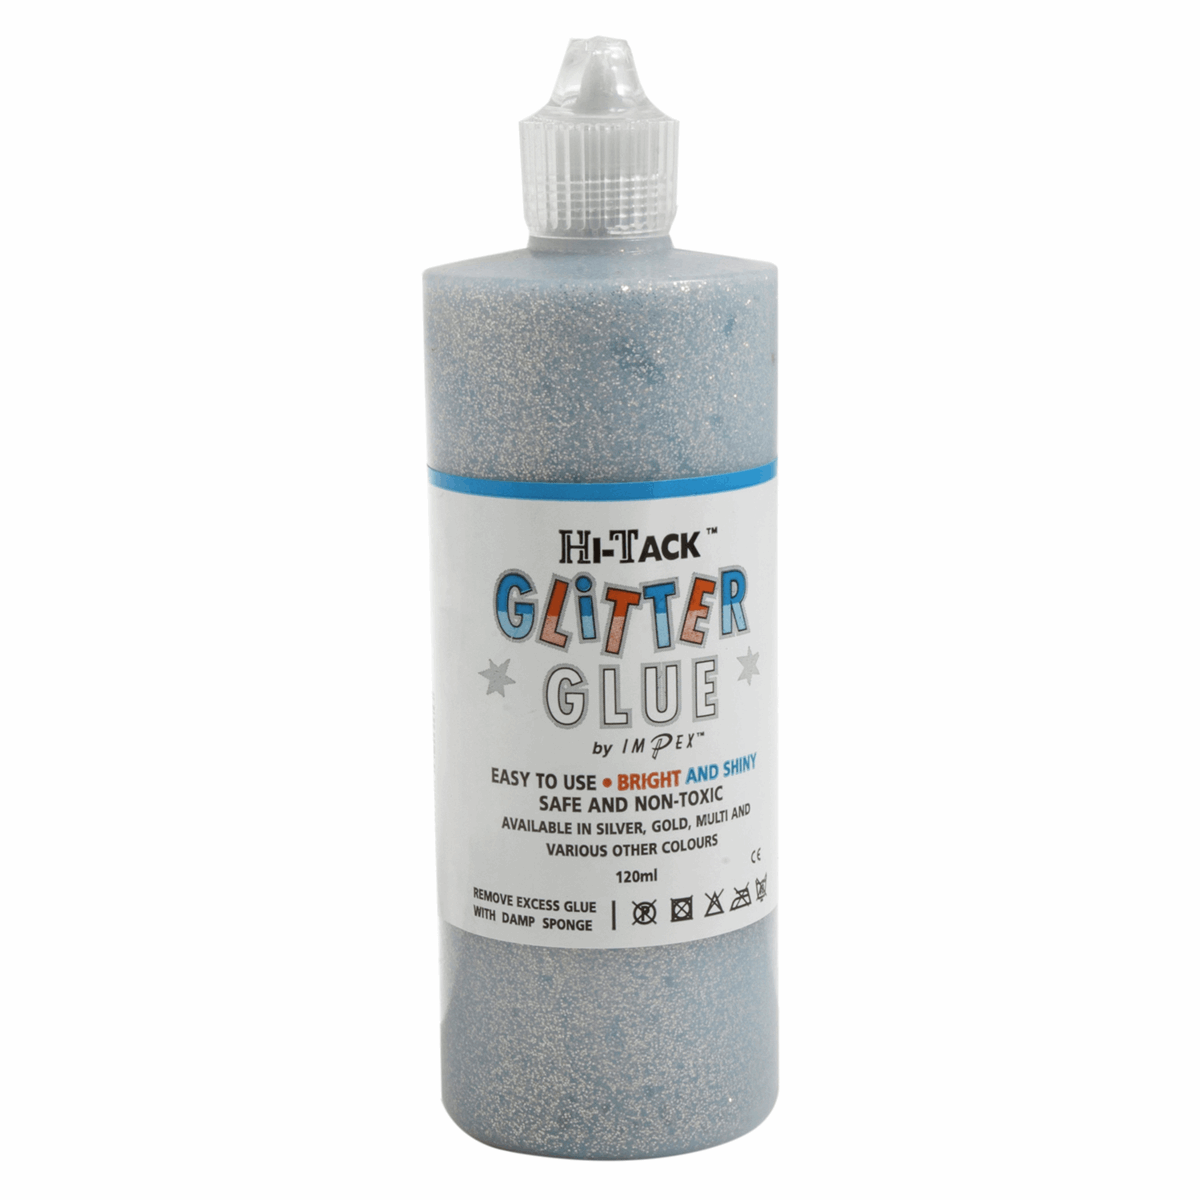 Trimits Hi-Tack Glitter Glue Adhesive Silver Craft 120ml